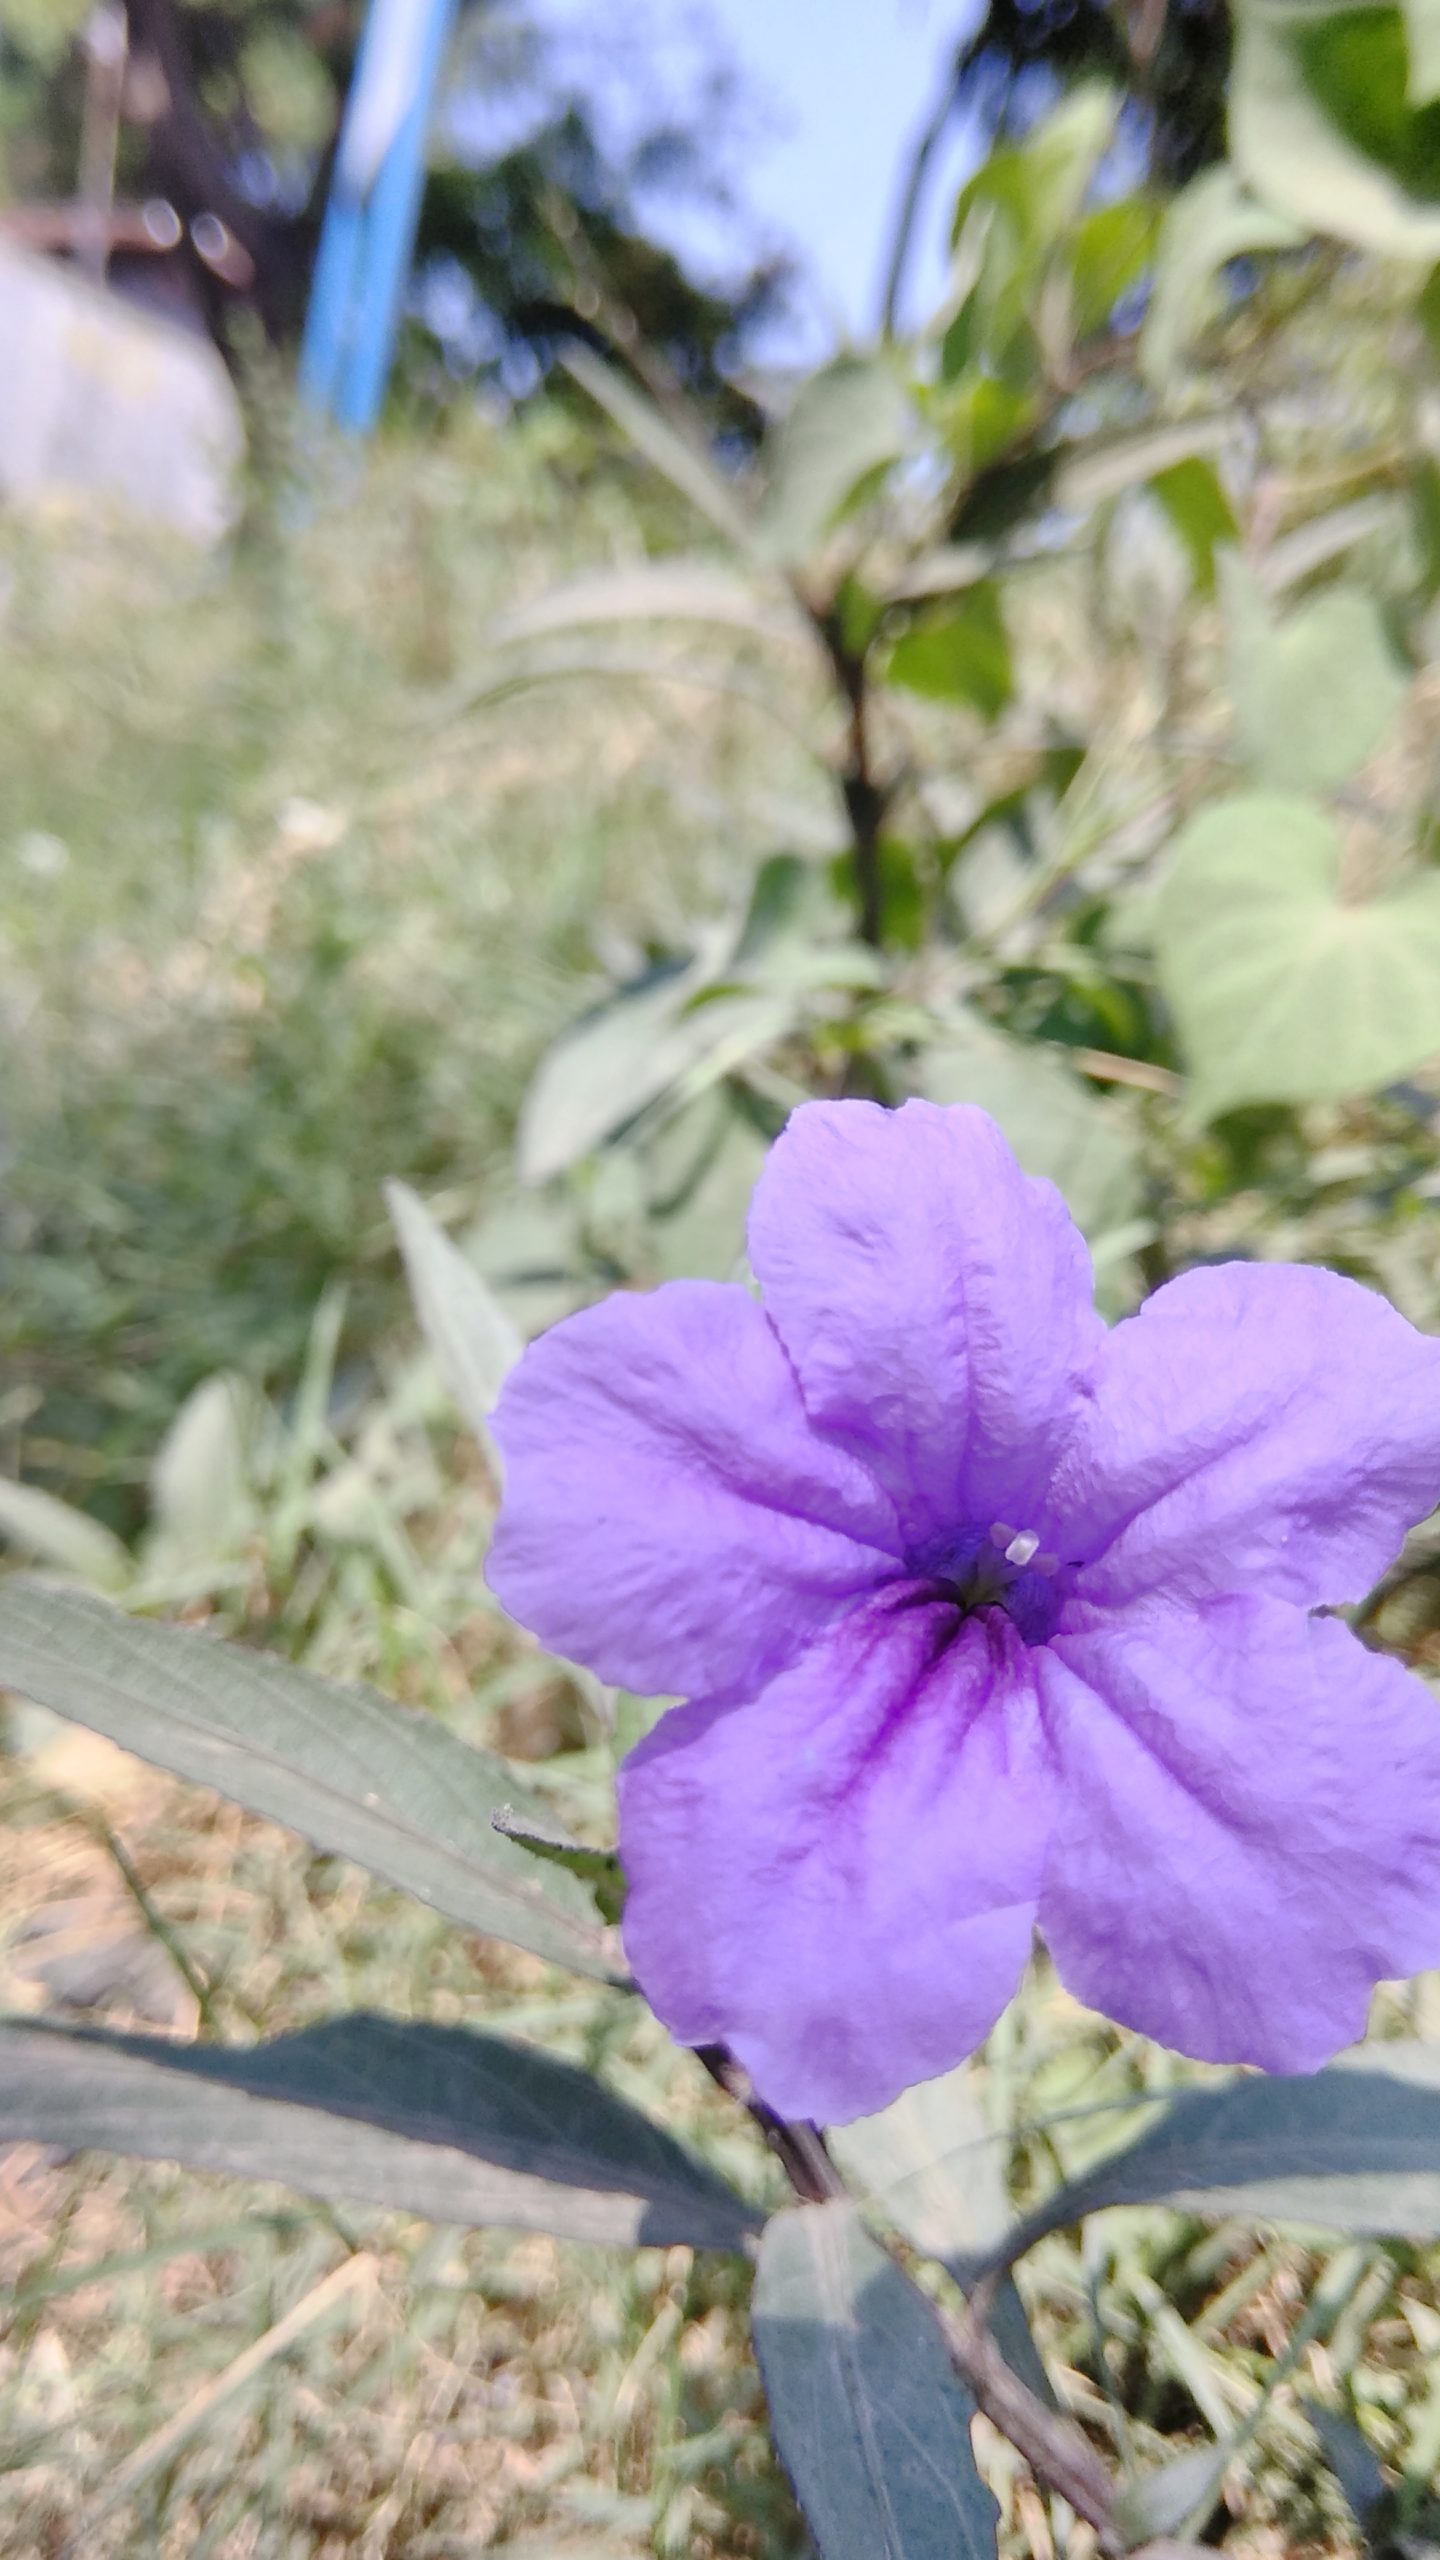 Tổng hợp hình ảnh hoa cỏ nổ – hoa chiều tím đẹp nhất - [Kích thước hình ảnh: 1440x2560 px]